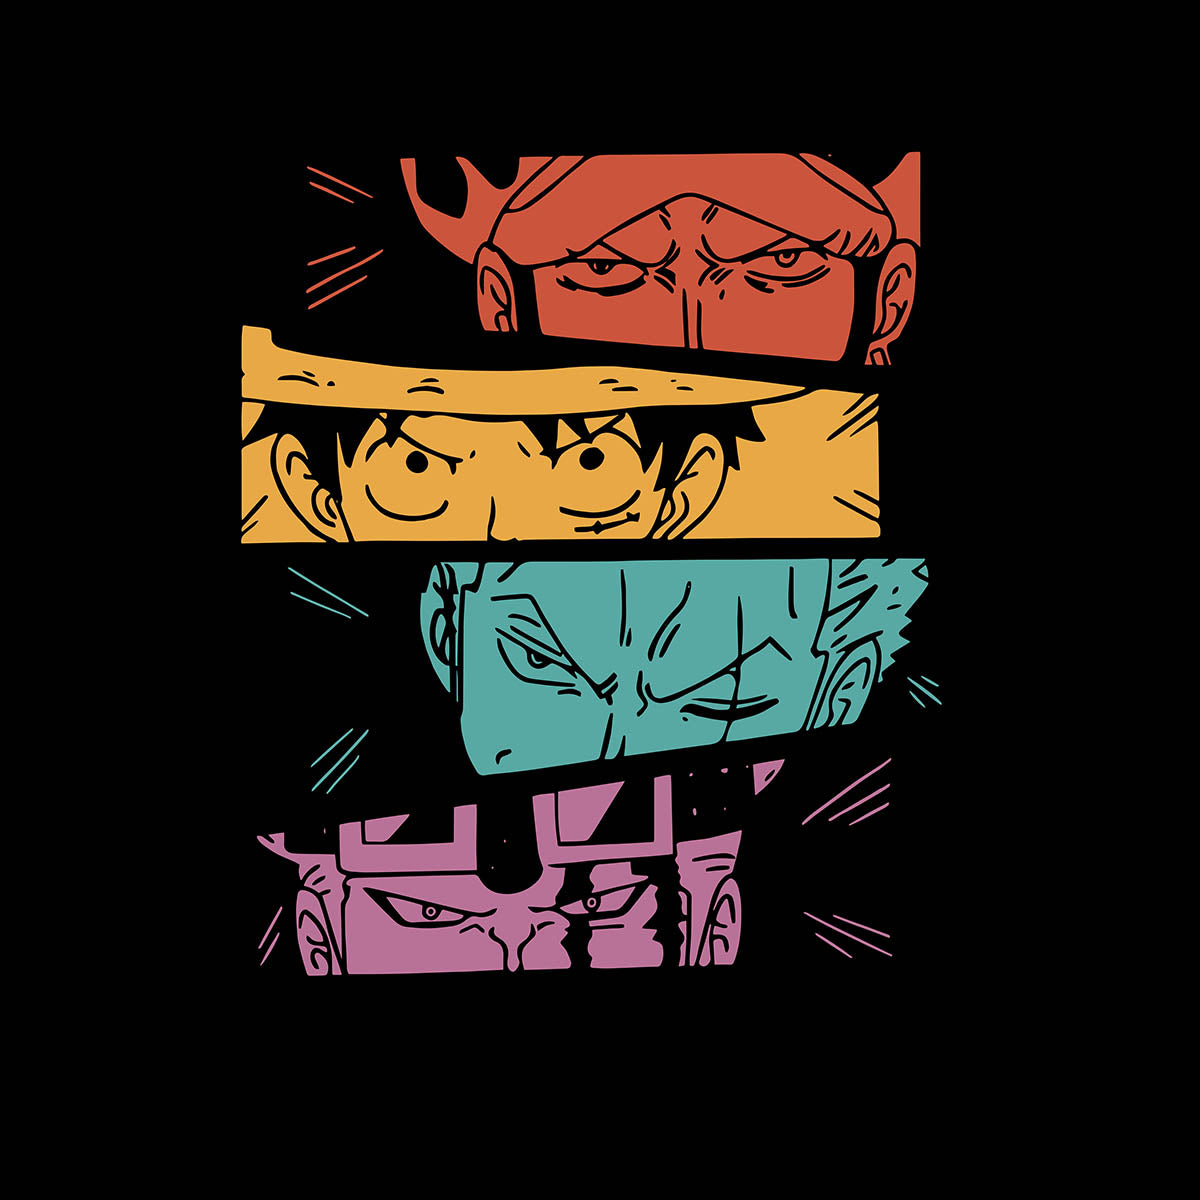 One Piece Straw Hat Pirates Monkey Luffy Zoro One Piece Anime Manga  T-shirt for Kids